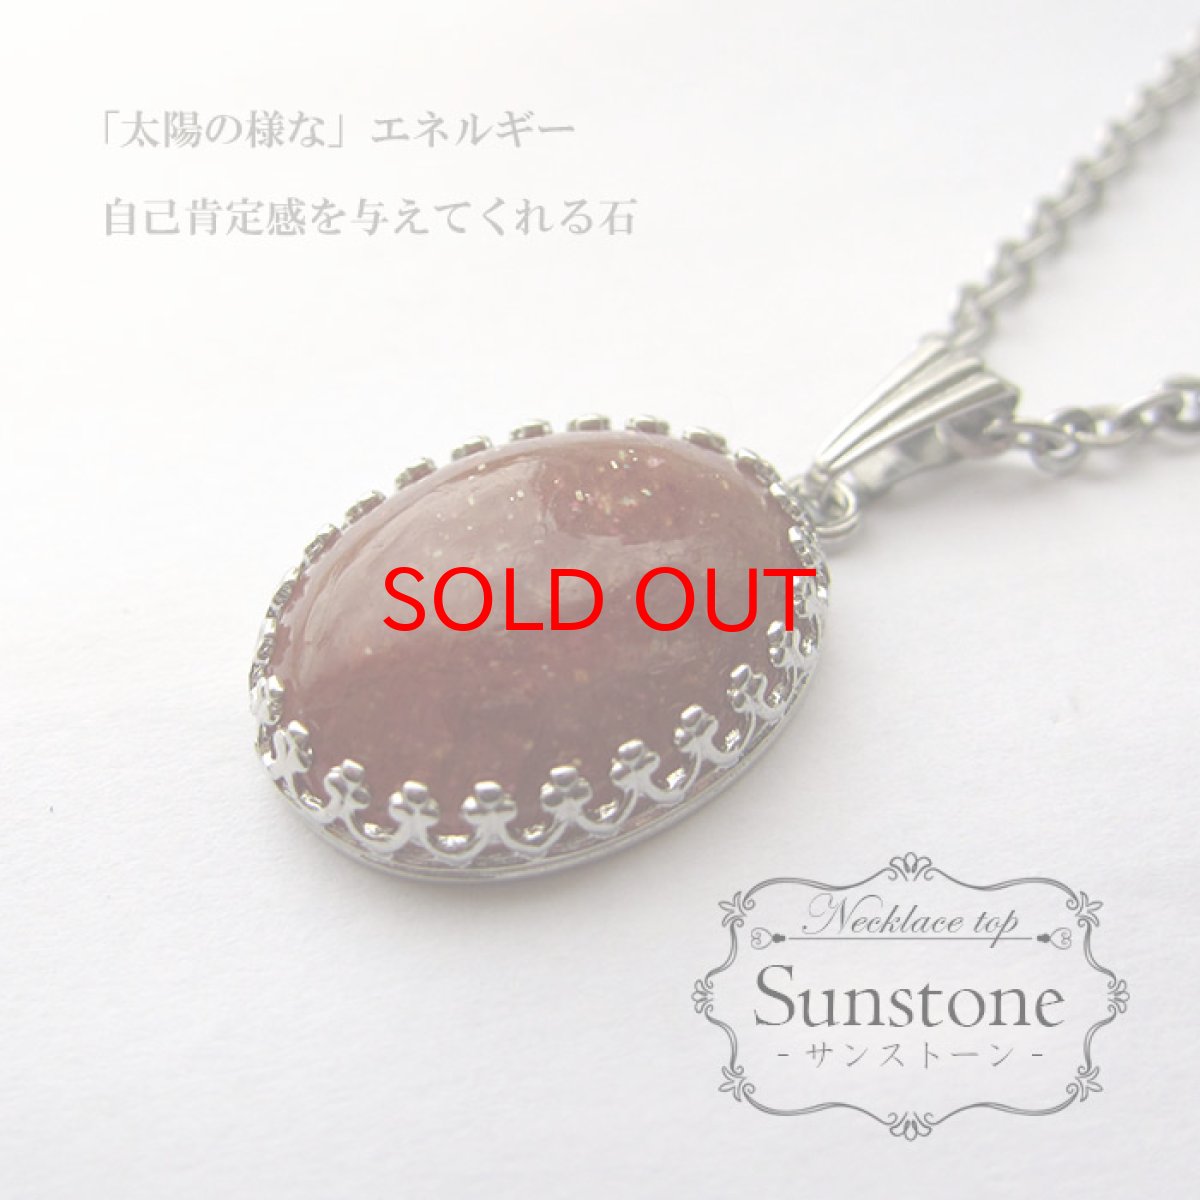 画像1: 【送料無料】サンストーンネックレス サンストーン Sunstone 首飾り necklace ネックレス トップ 天然石 パワーストーン (1)